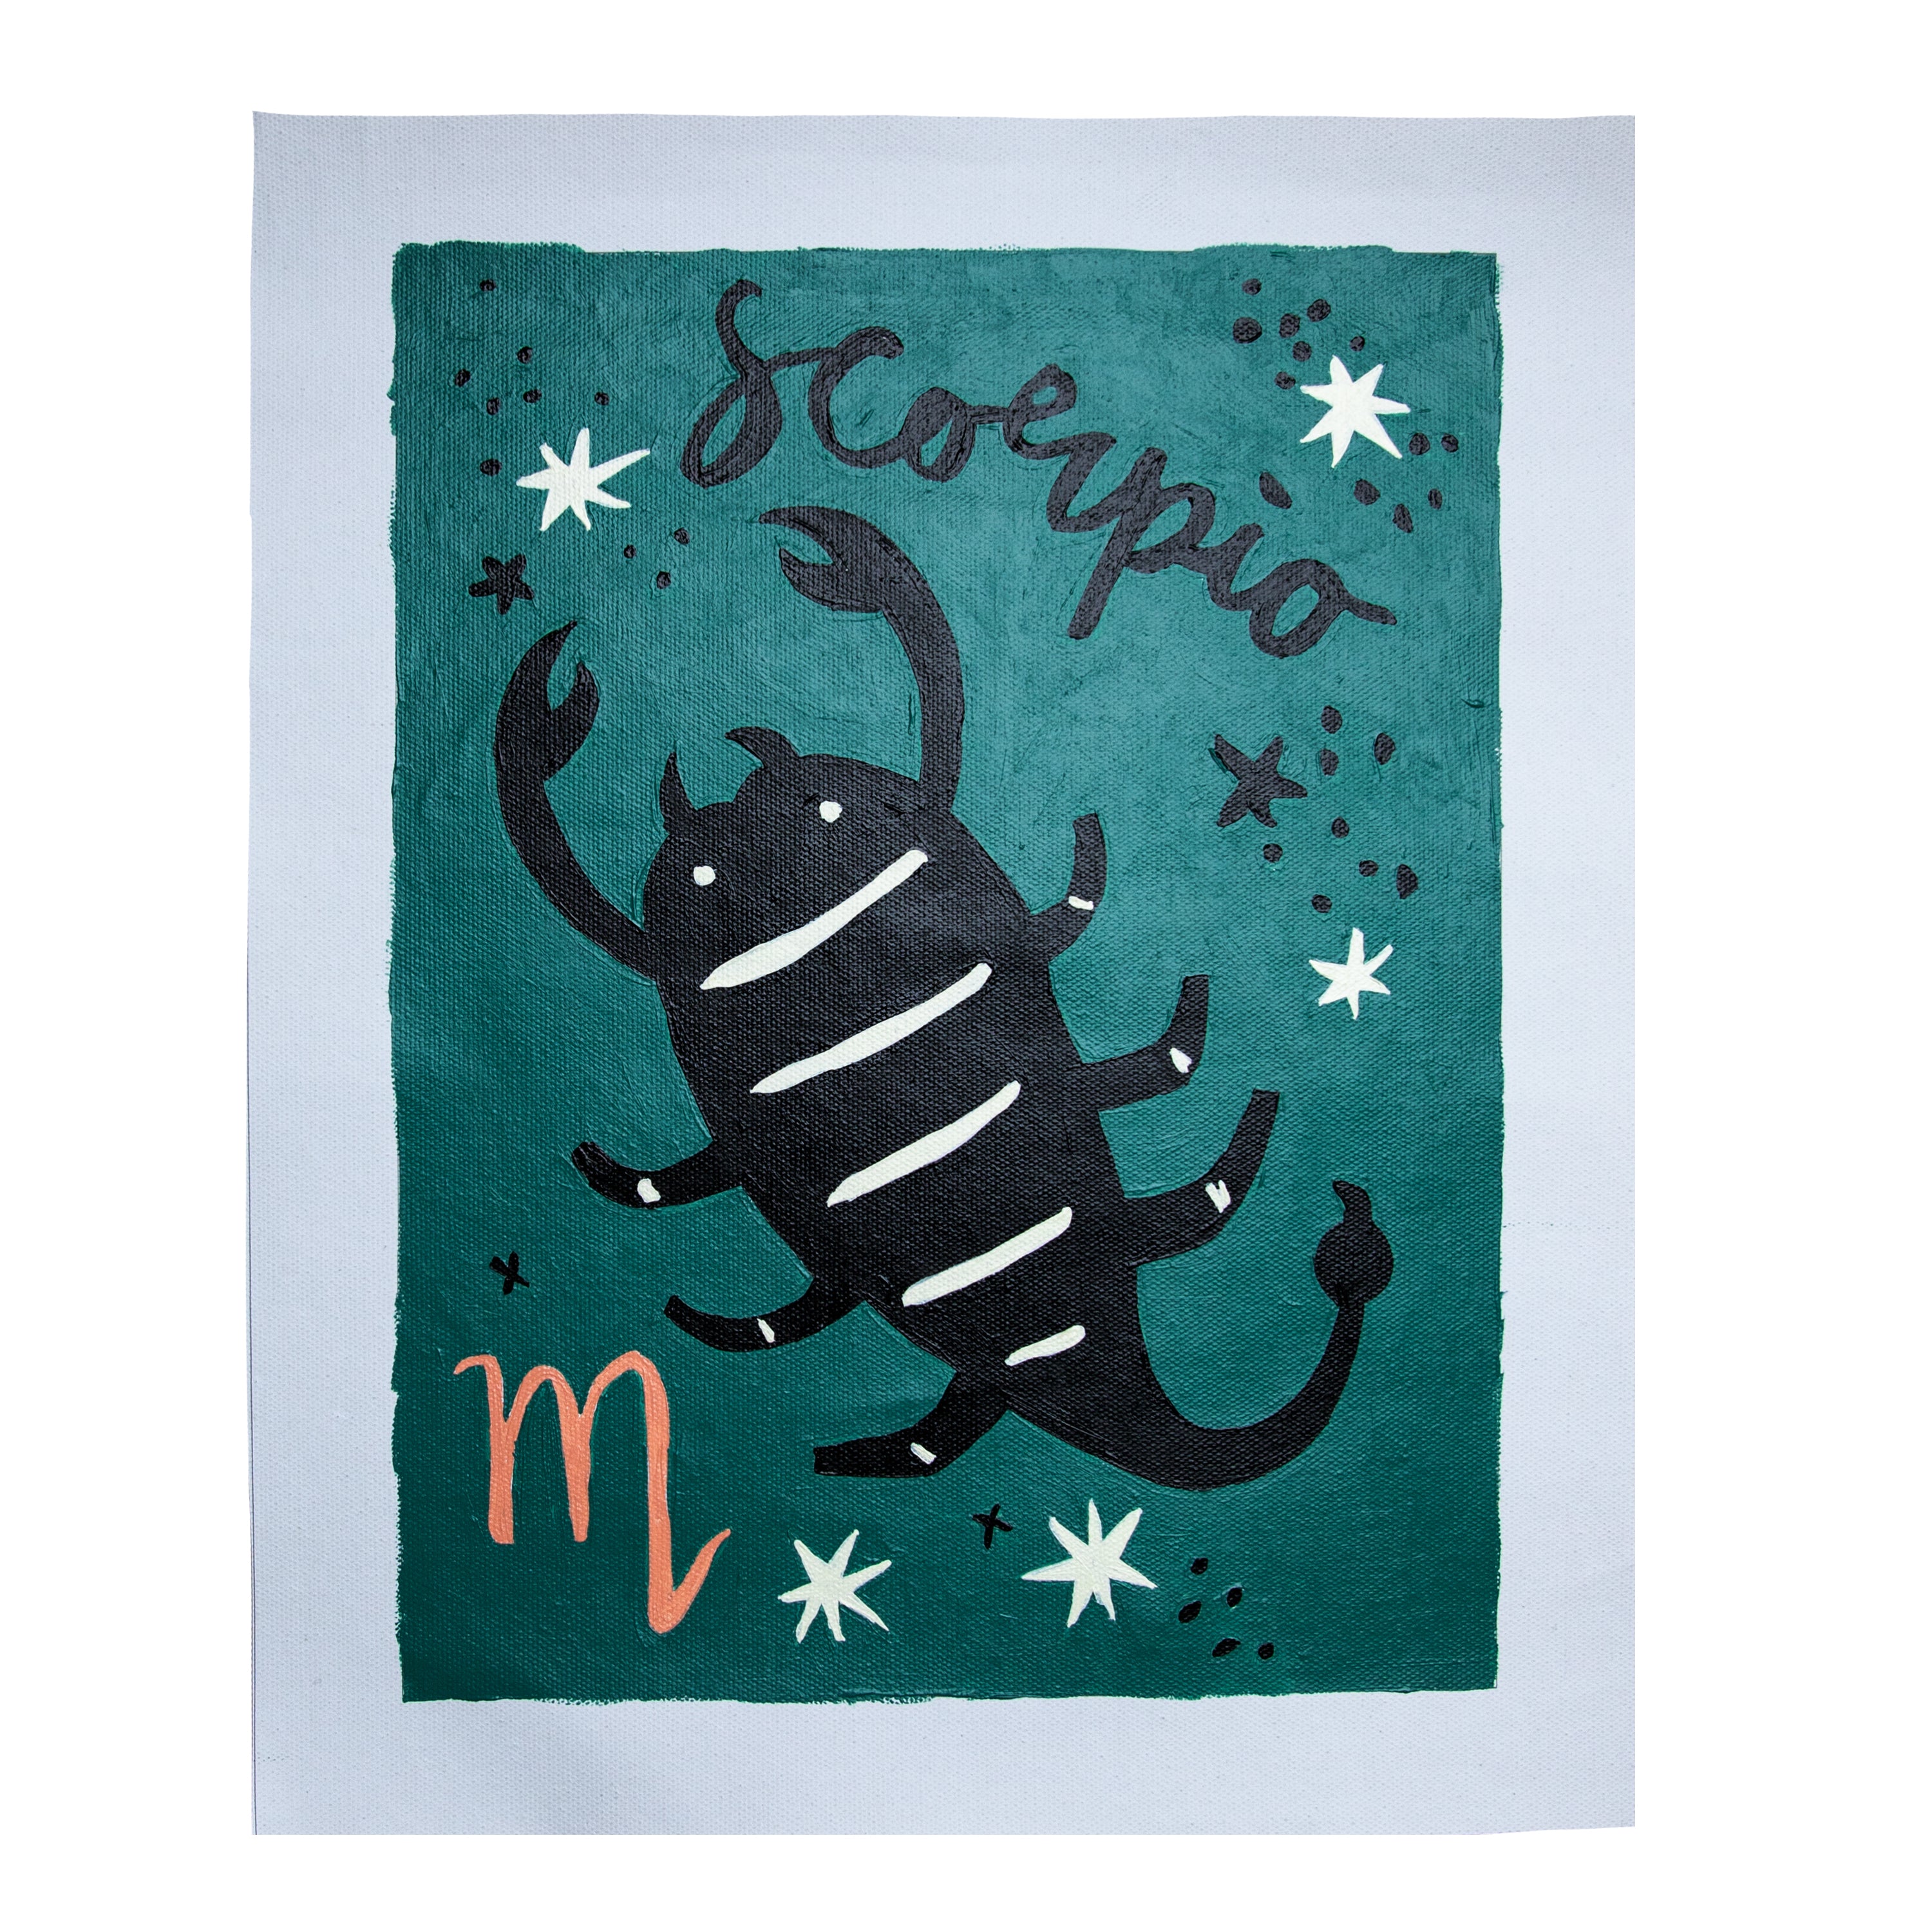 Special Edition Zodiac: Scorpio